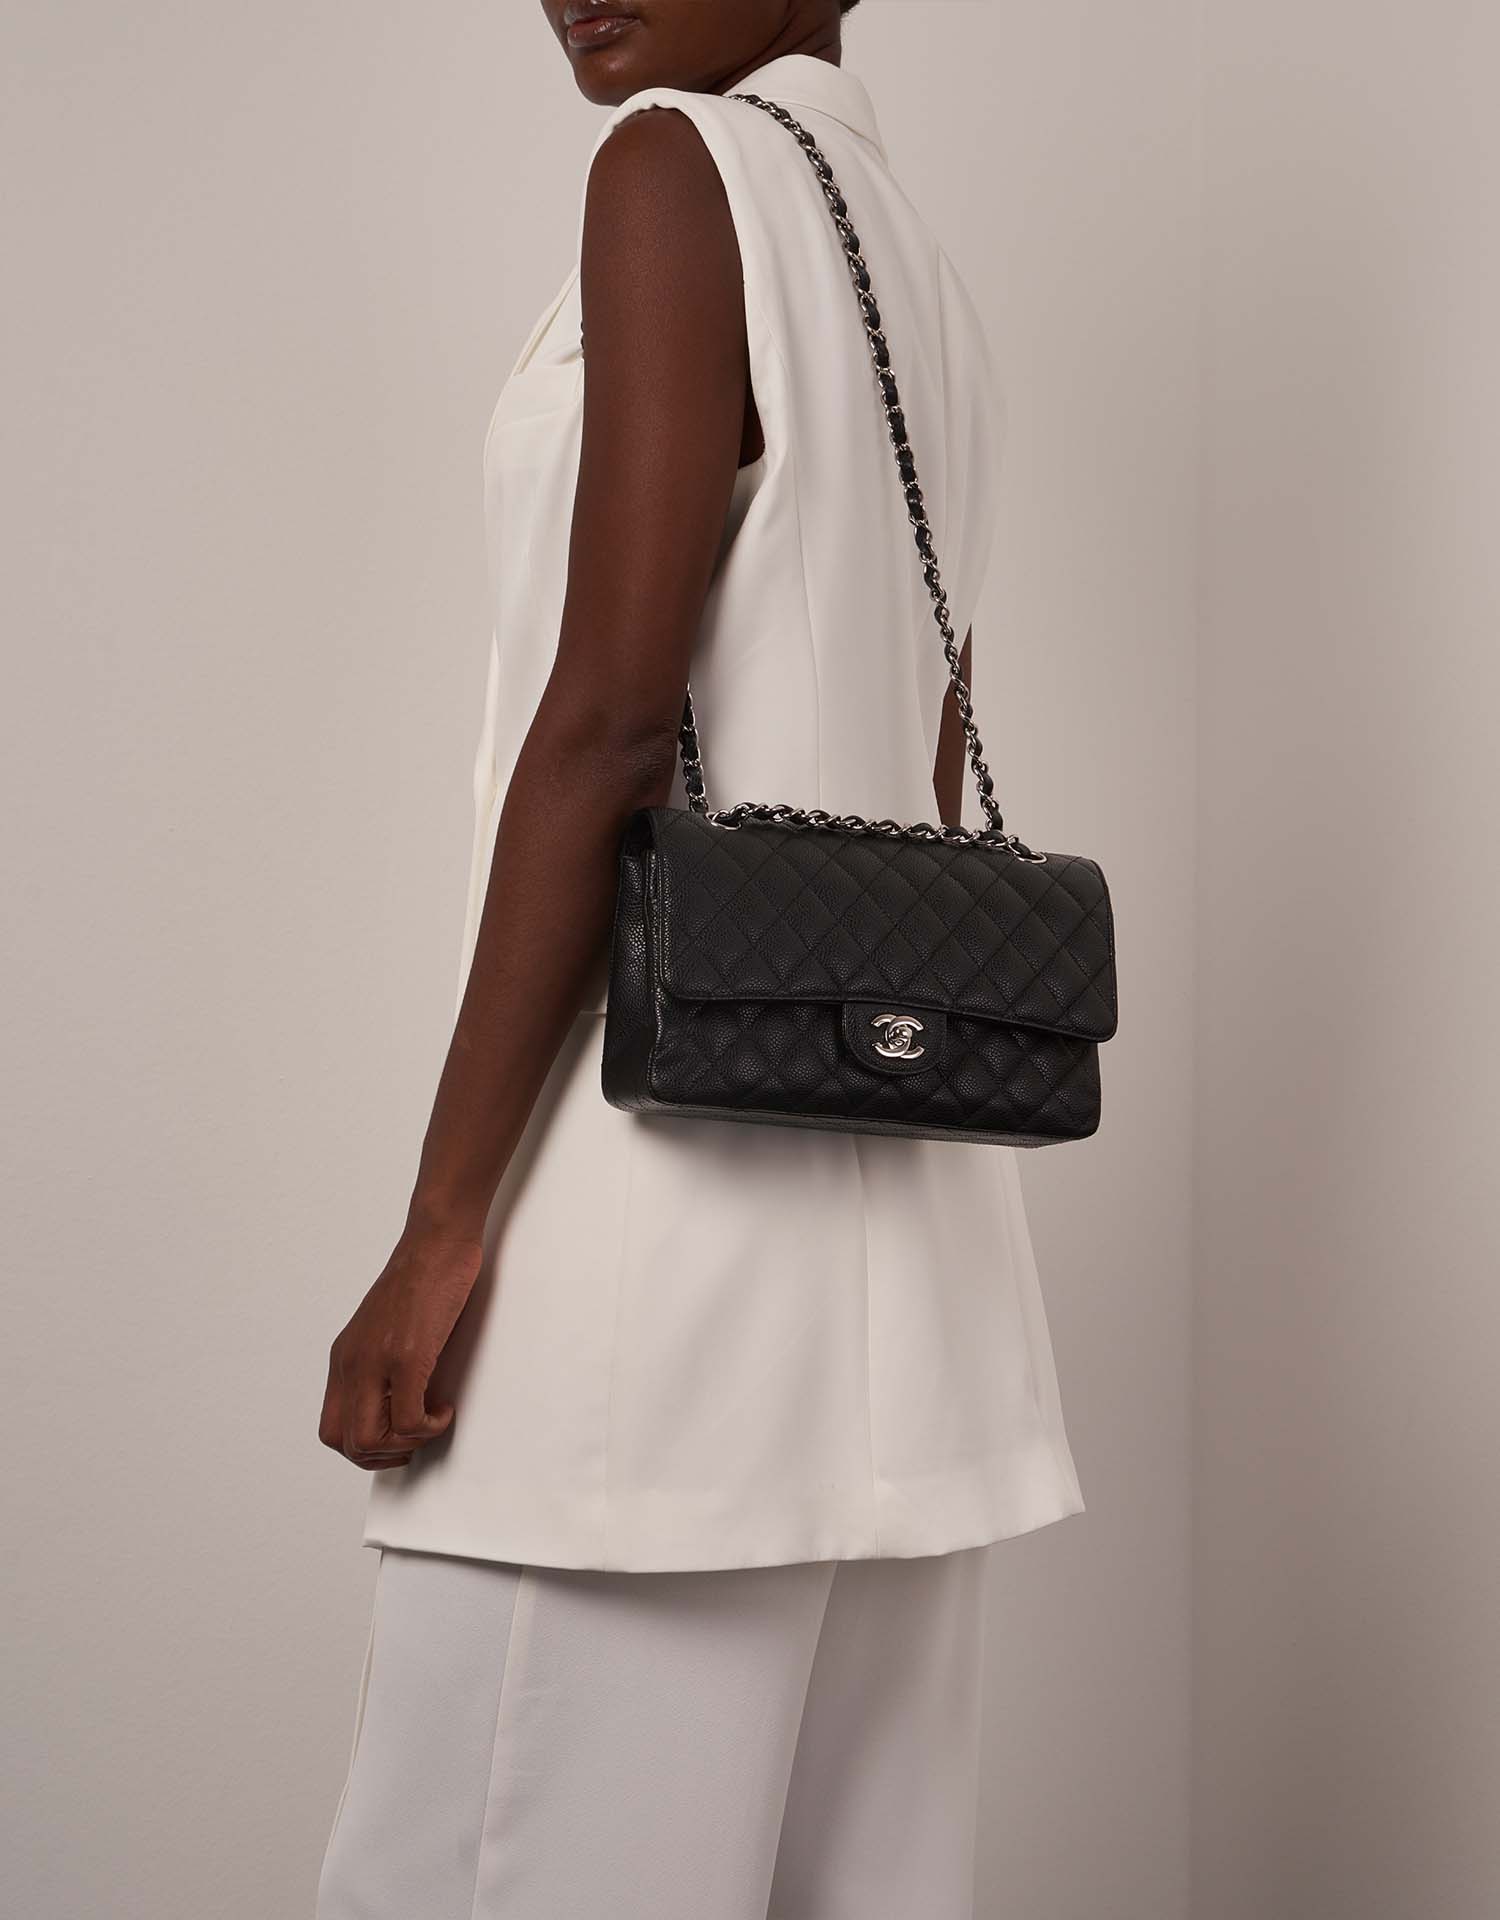 Chanel Timeless Medium Schwarz auf Model | Verkaufen Sie Ihre Designer-Tasche auf Saclab.com